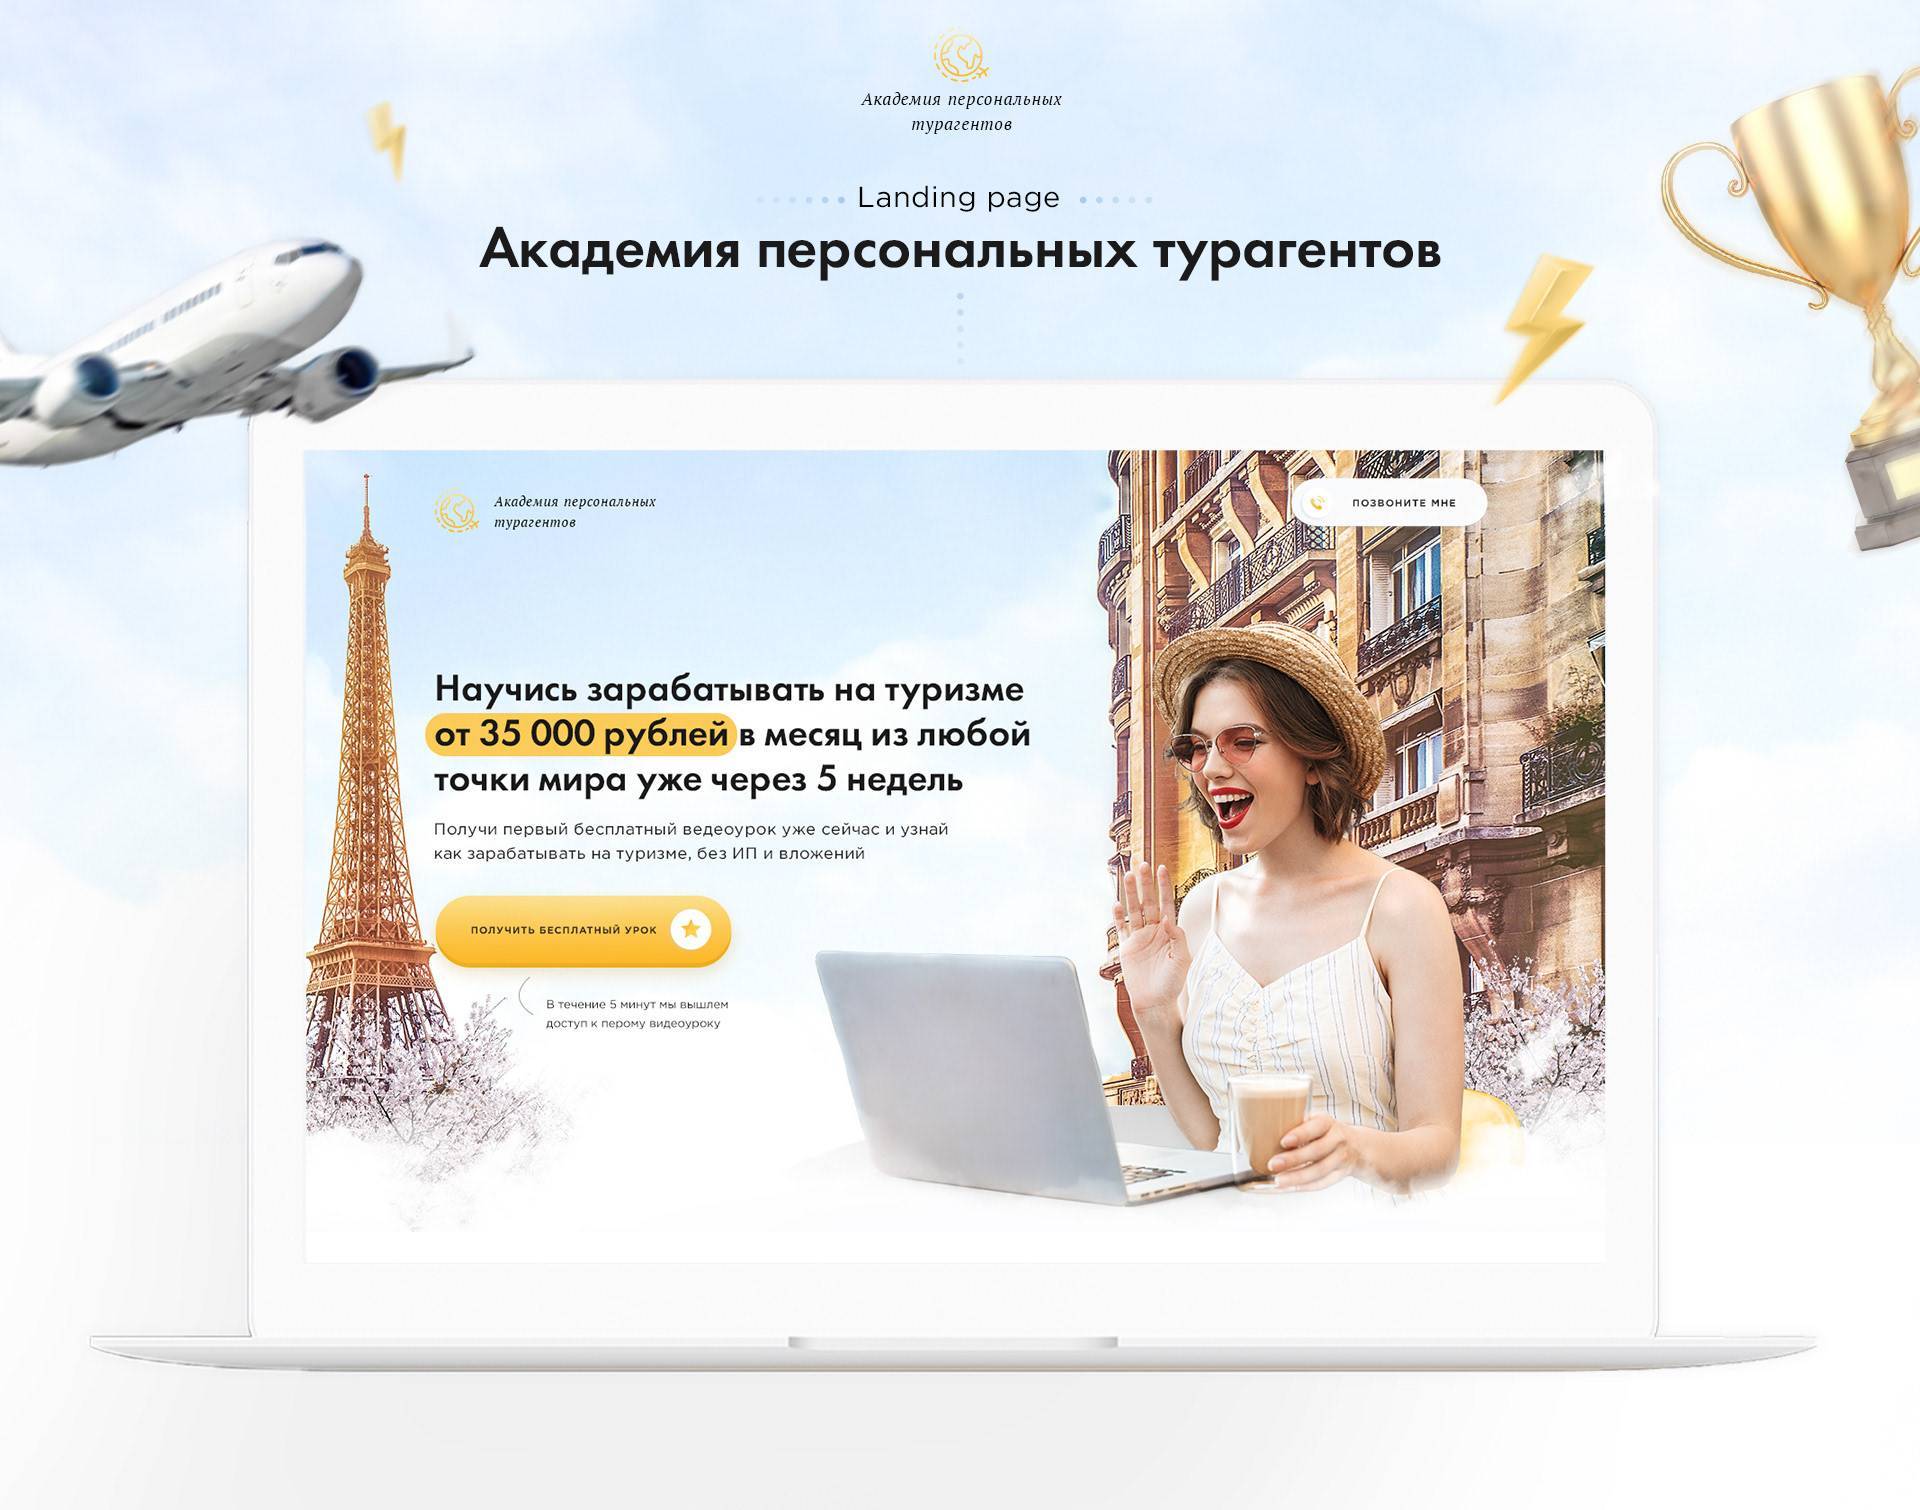 Как стать турагентом с нуля на дому в россии и украине | ardma.net